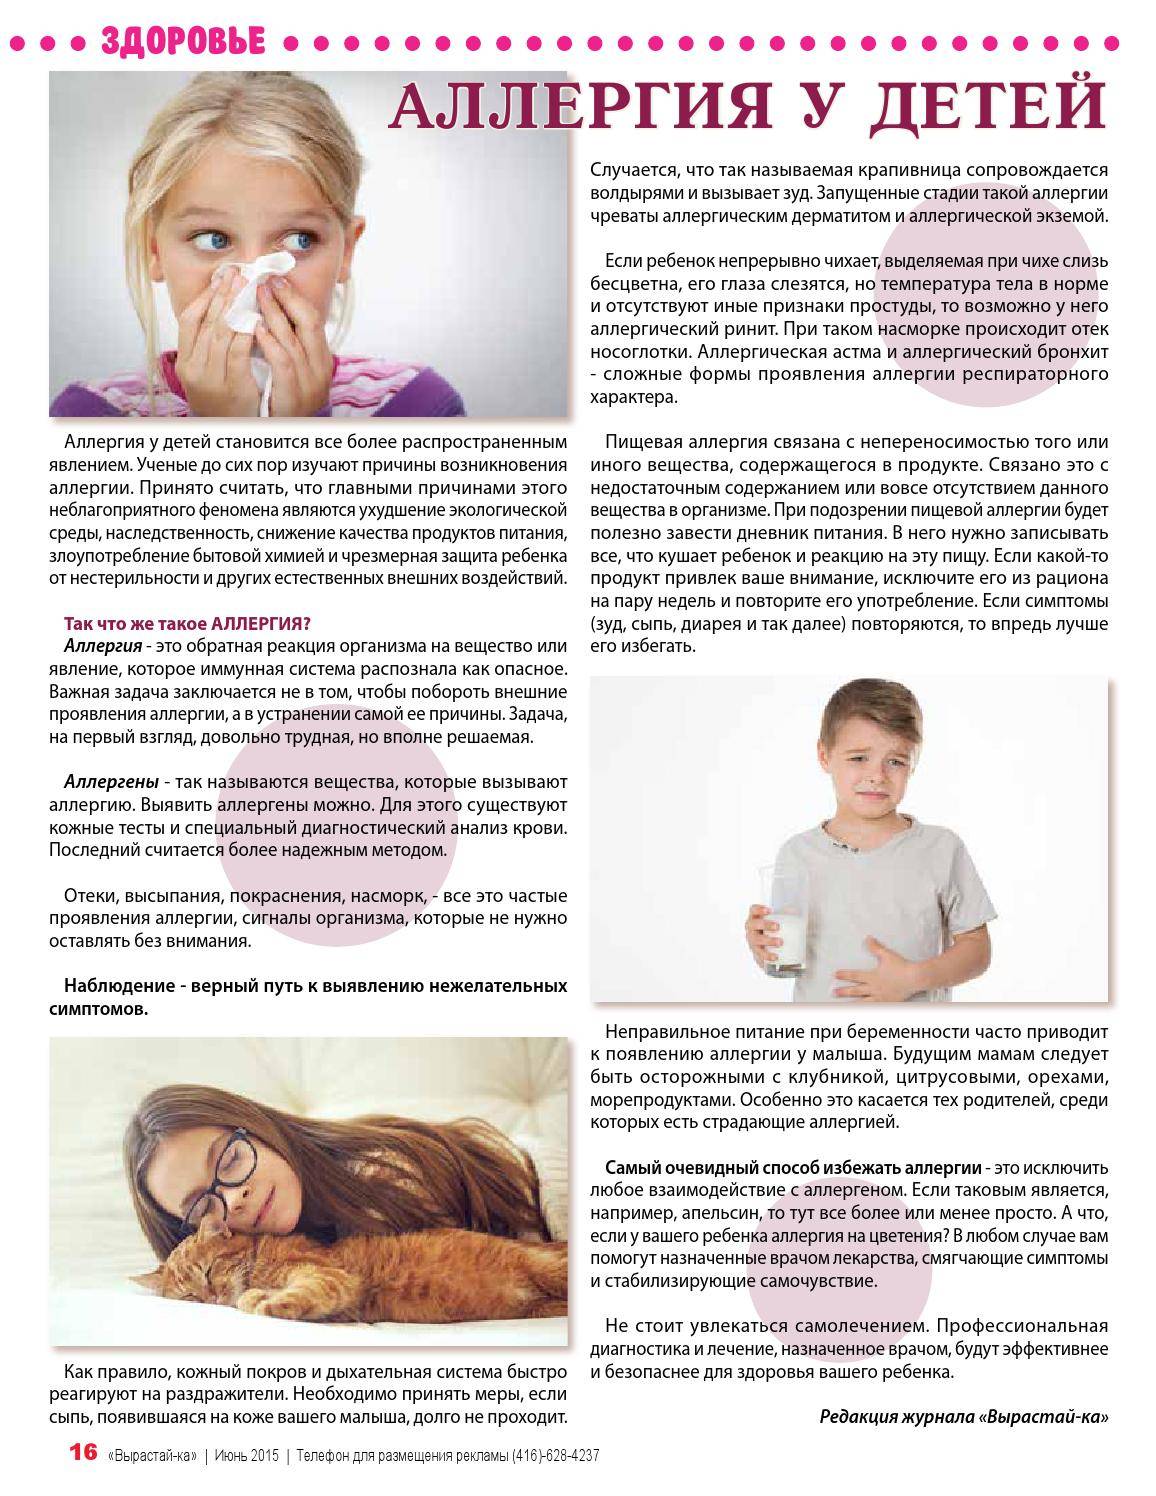 Как проявляется и как лечится ринит у детей? - медицинский центр adonis в киеве | лучшие врачи украины